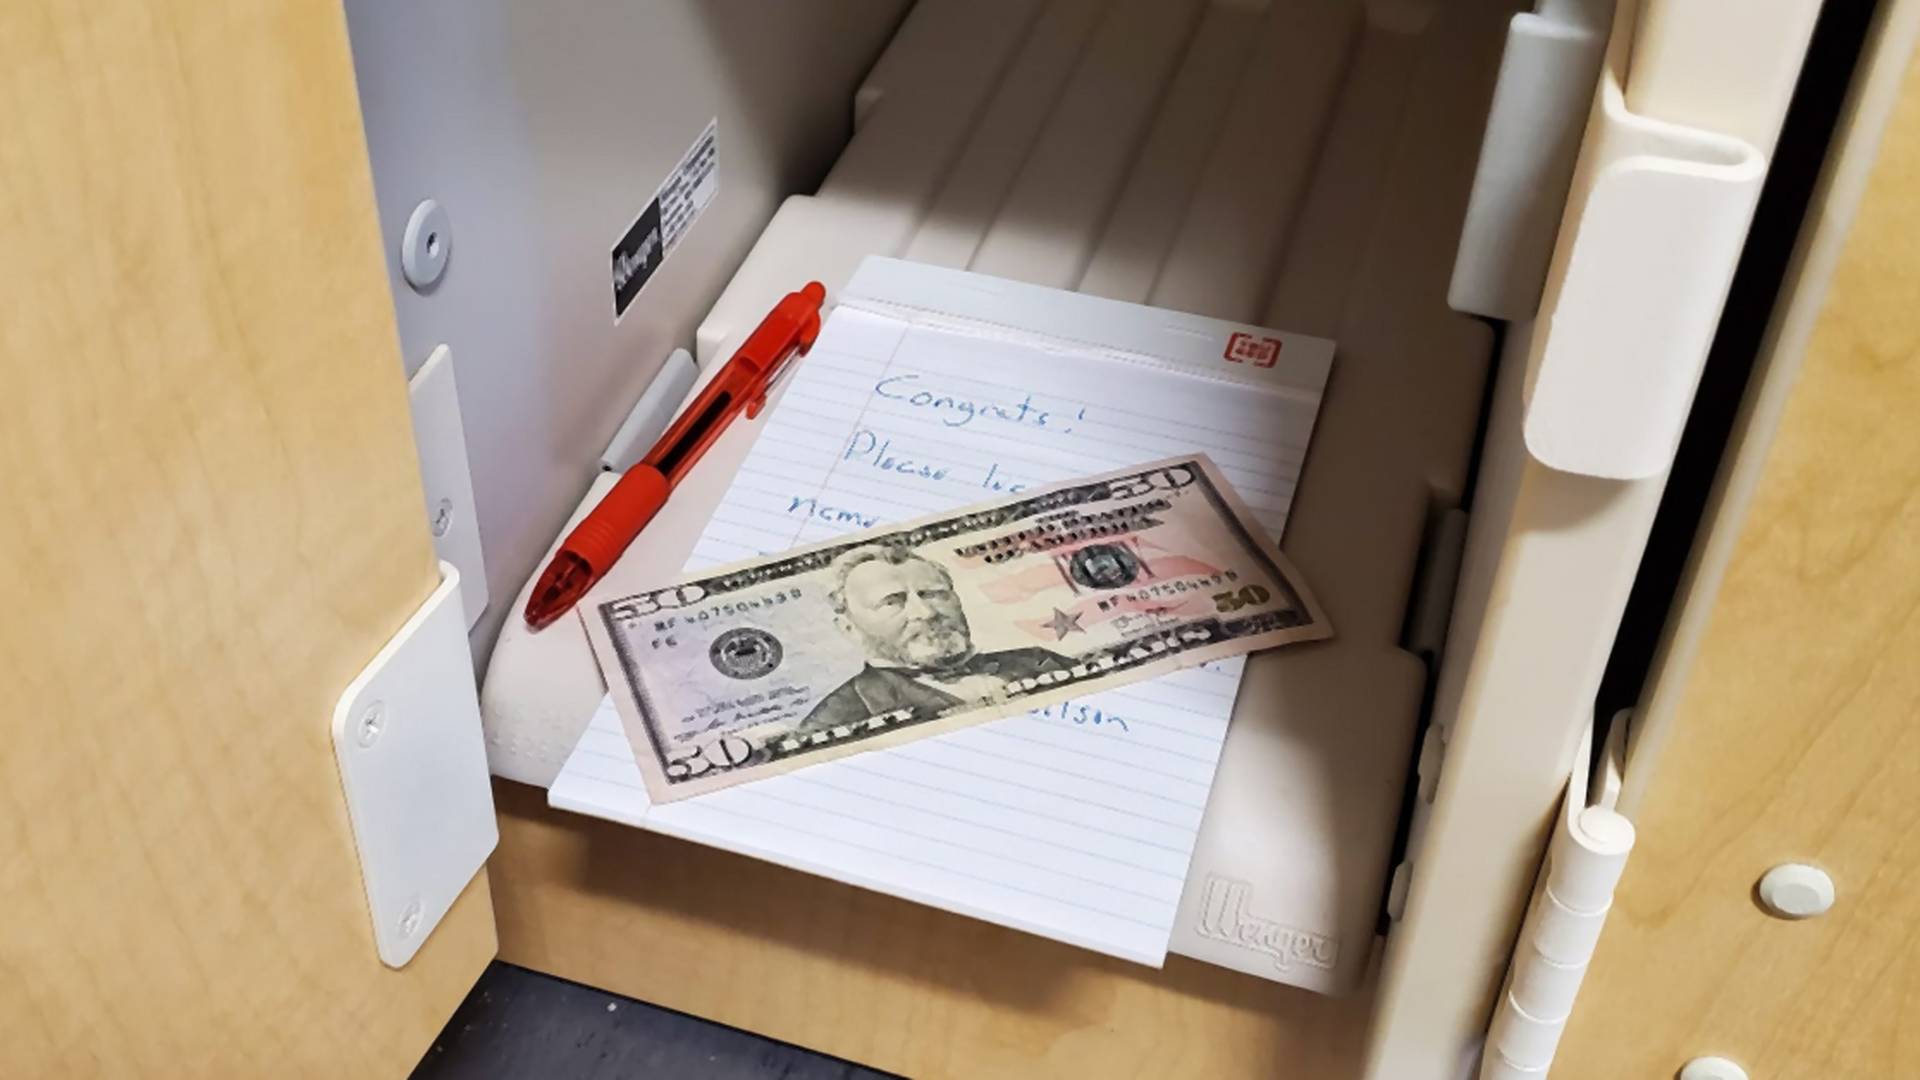 Učiteľ napísal do osnov, kde študenti nájdu ukryté peniaze. Chcel si overiť, či ich niekto číta